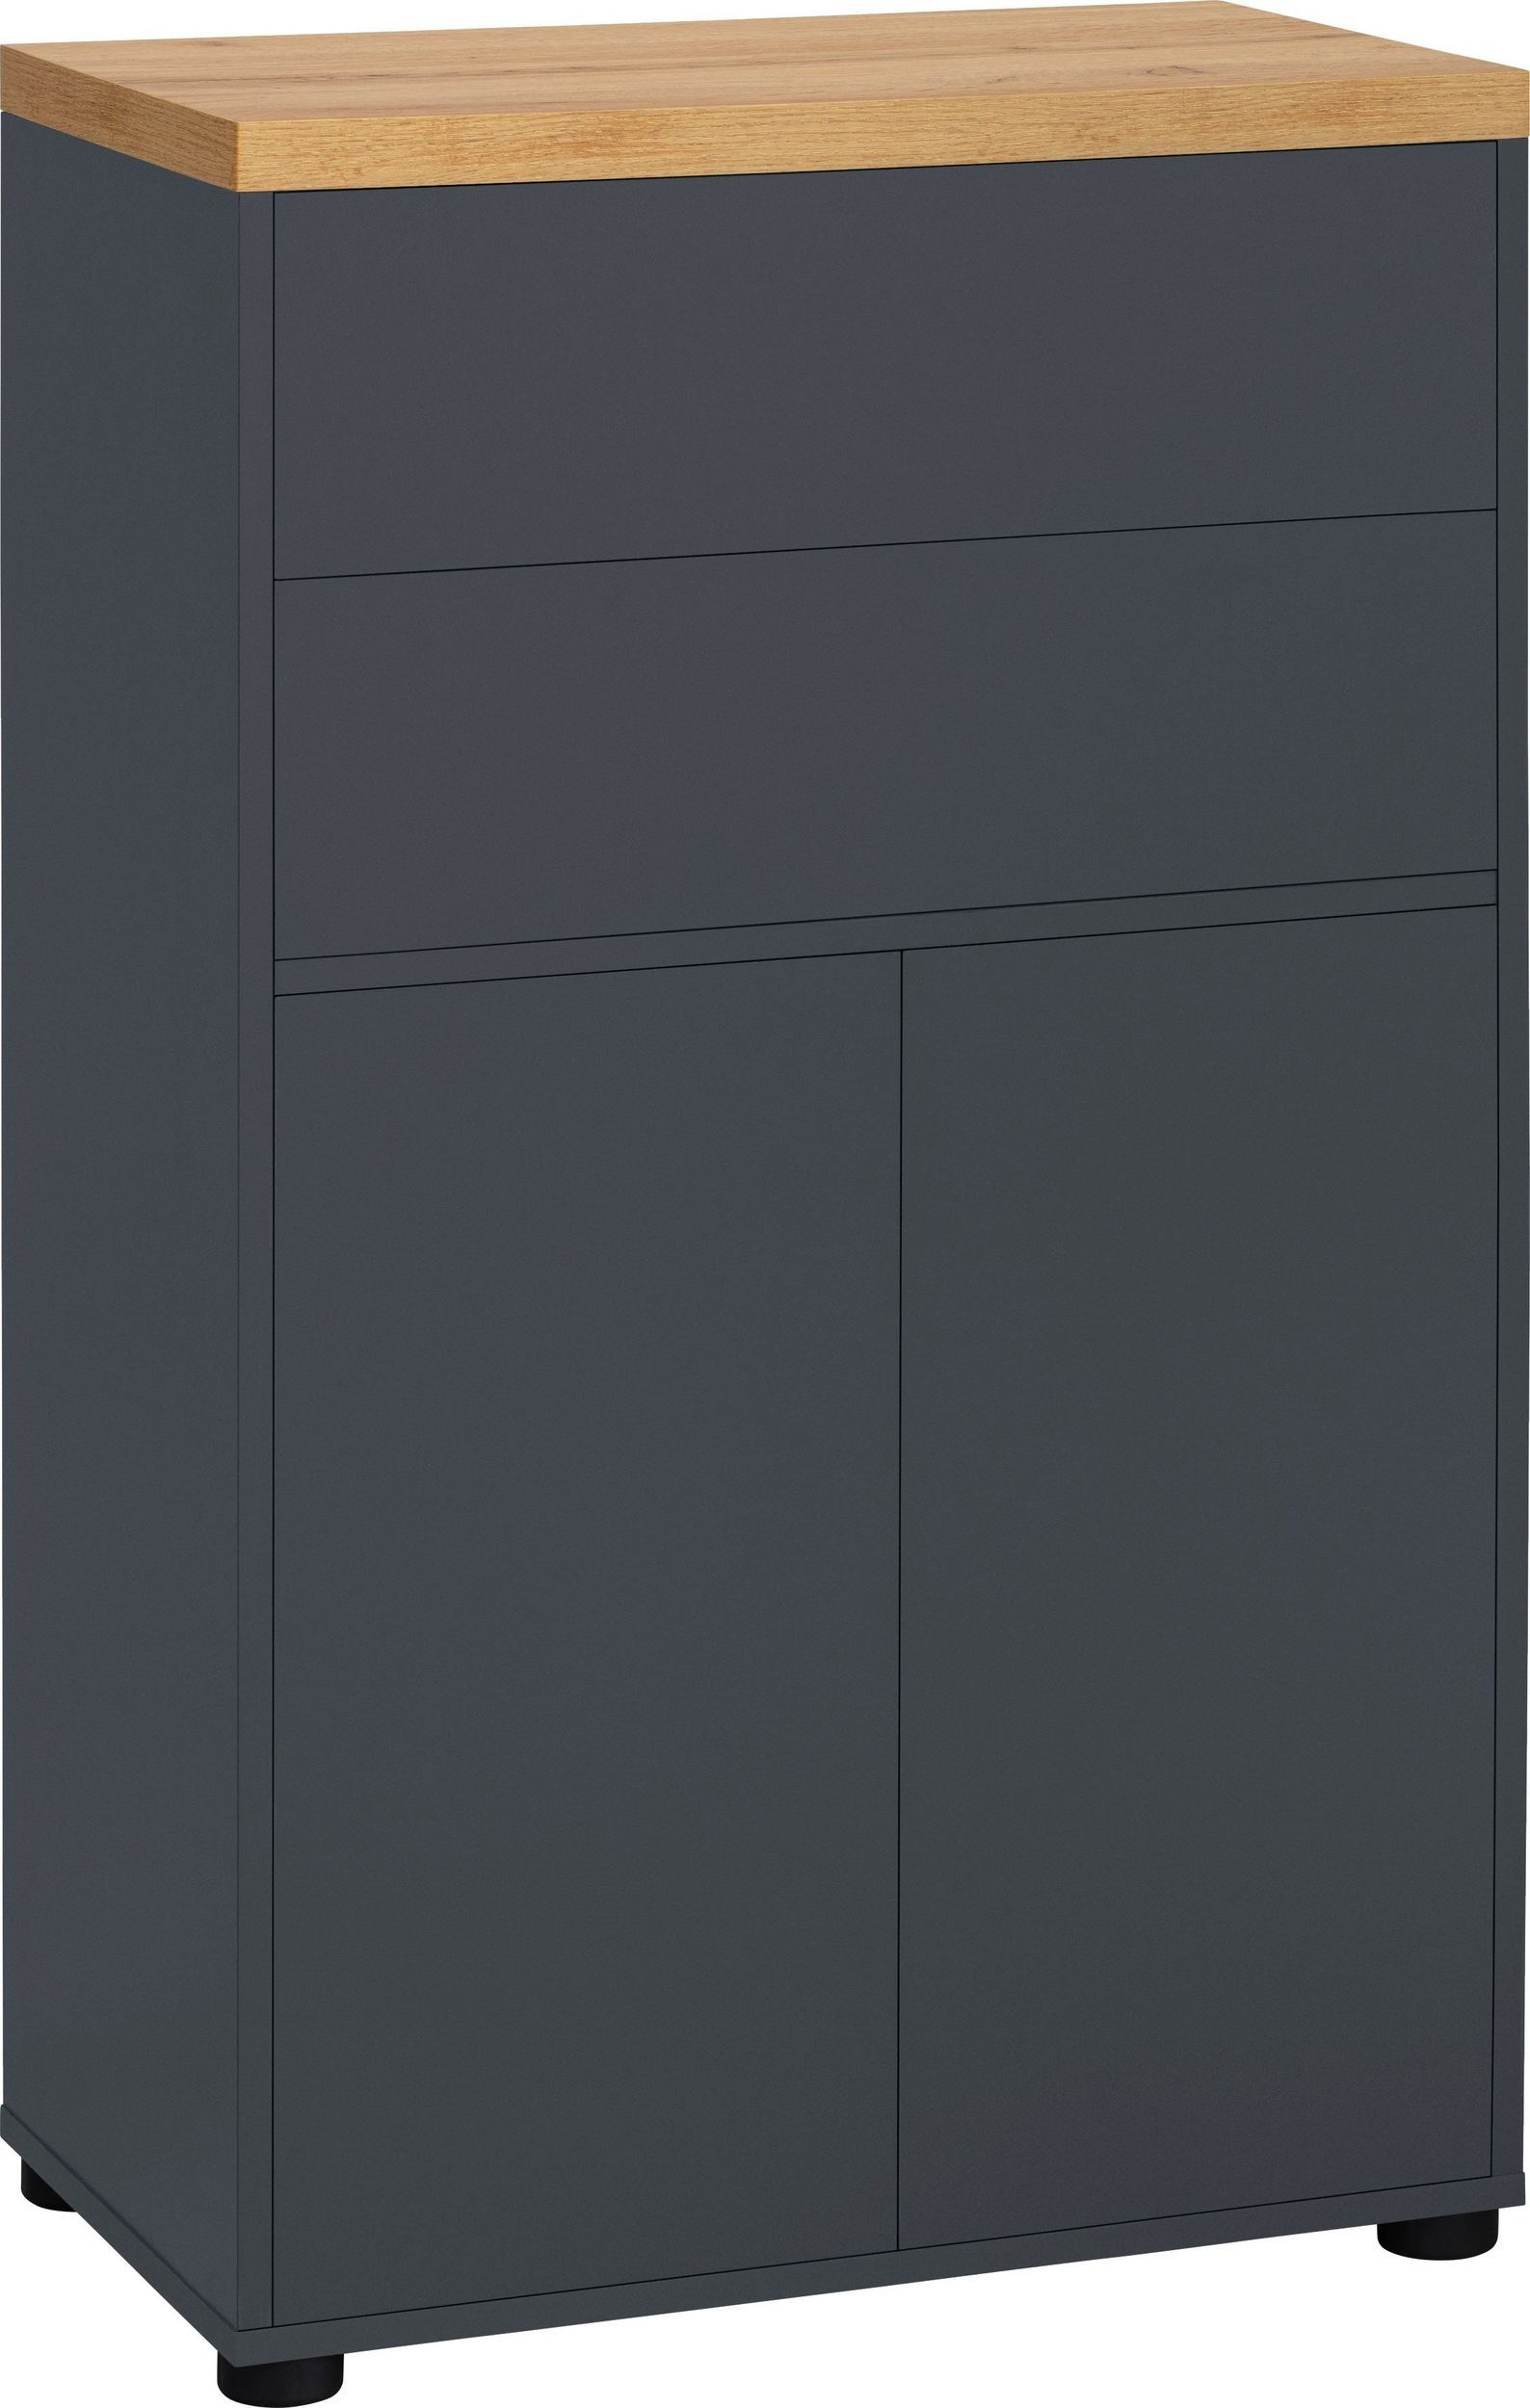 loft24 Midischrank Robin mit 2 Türen, 2 Schubkästen und Einlegeboden, BxH: 60 x 101,5 cm anthrazit/eiche